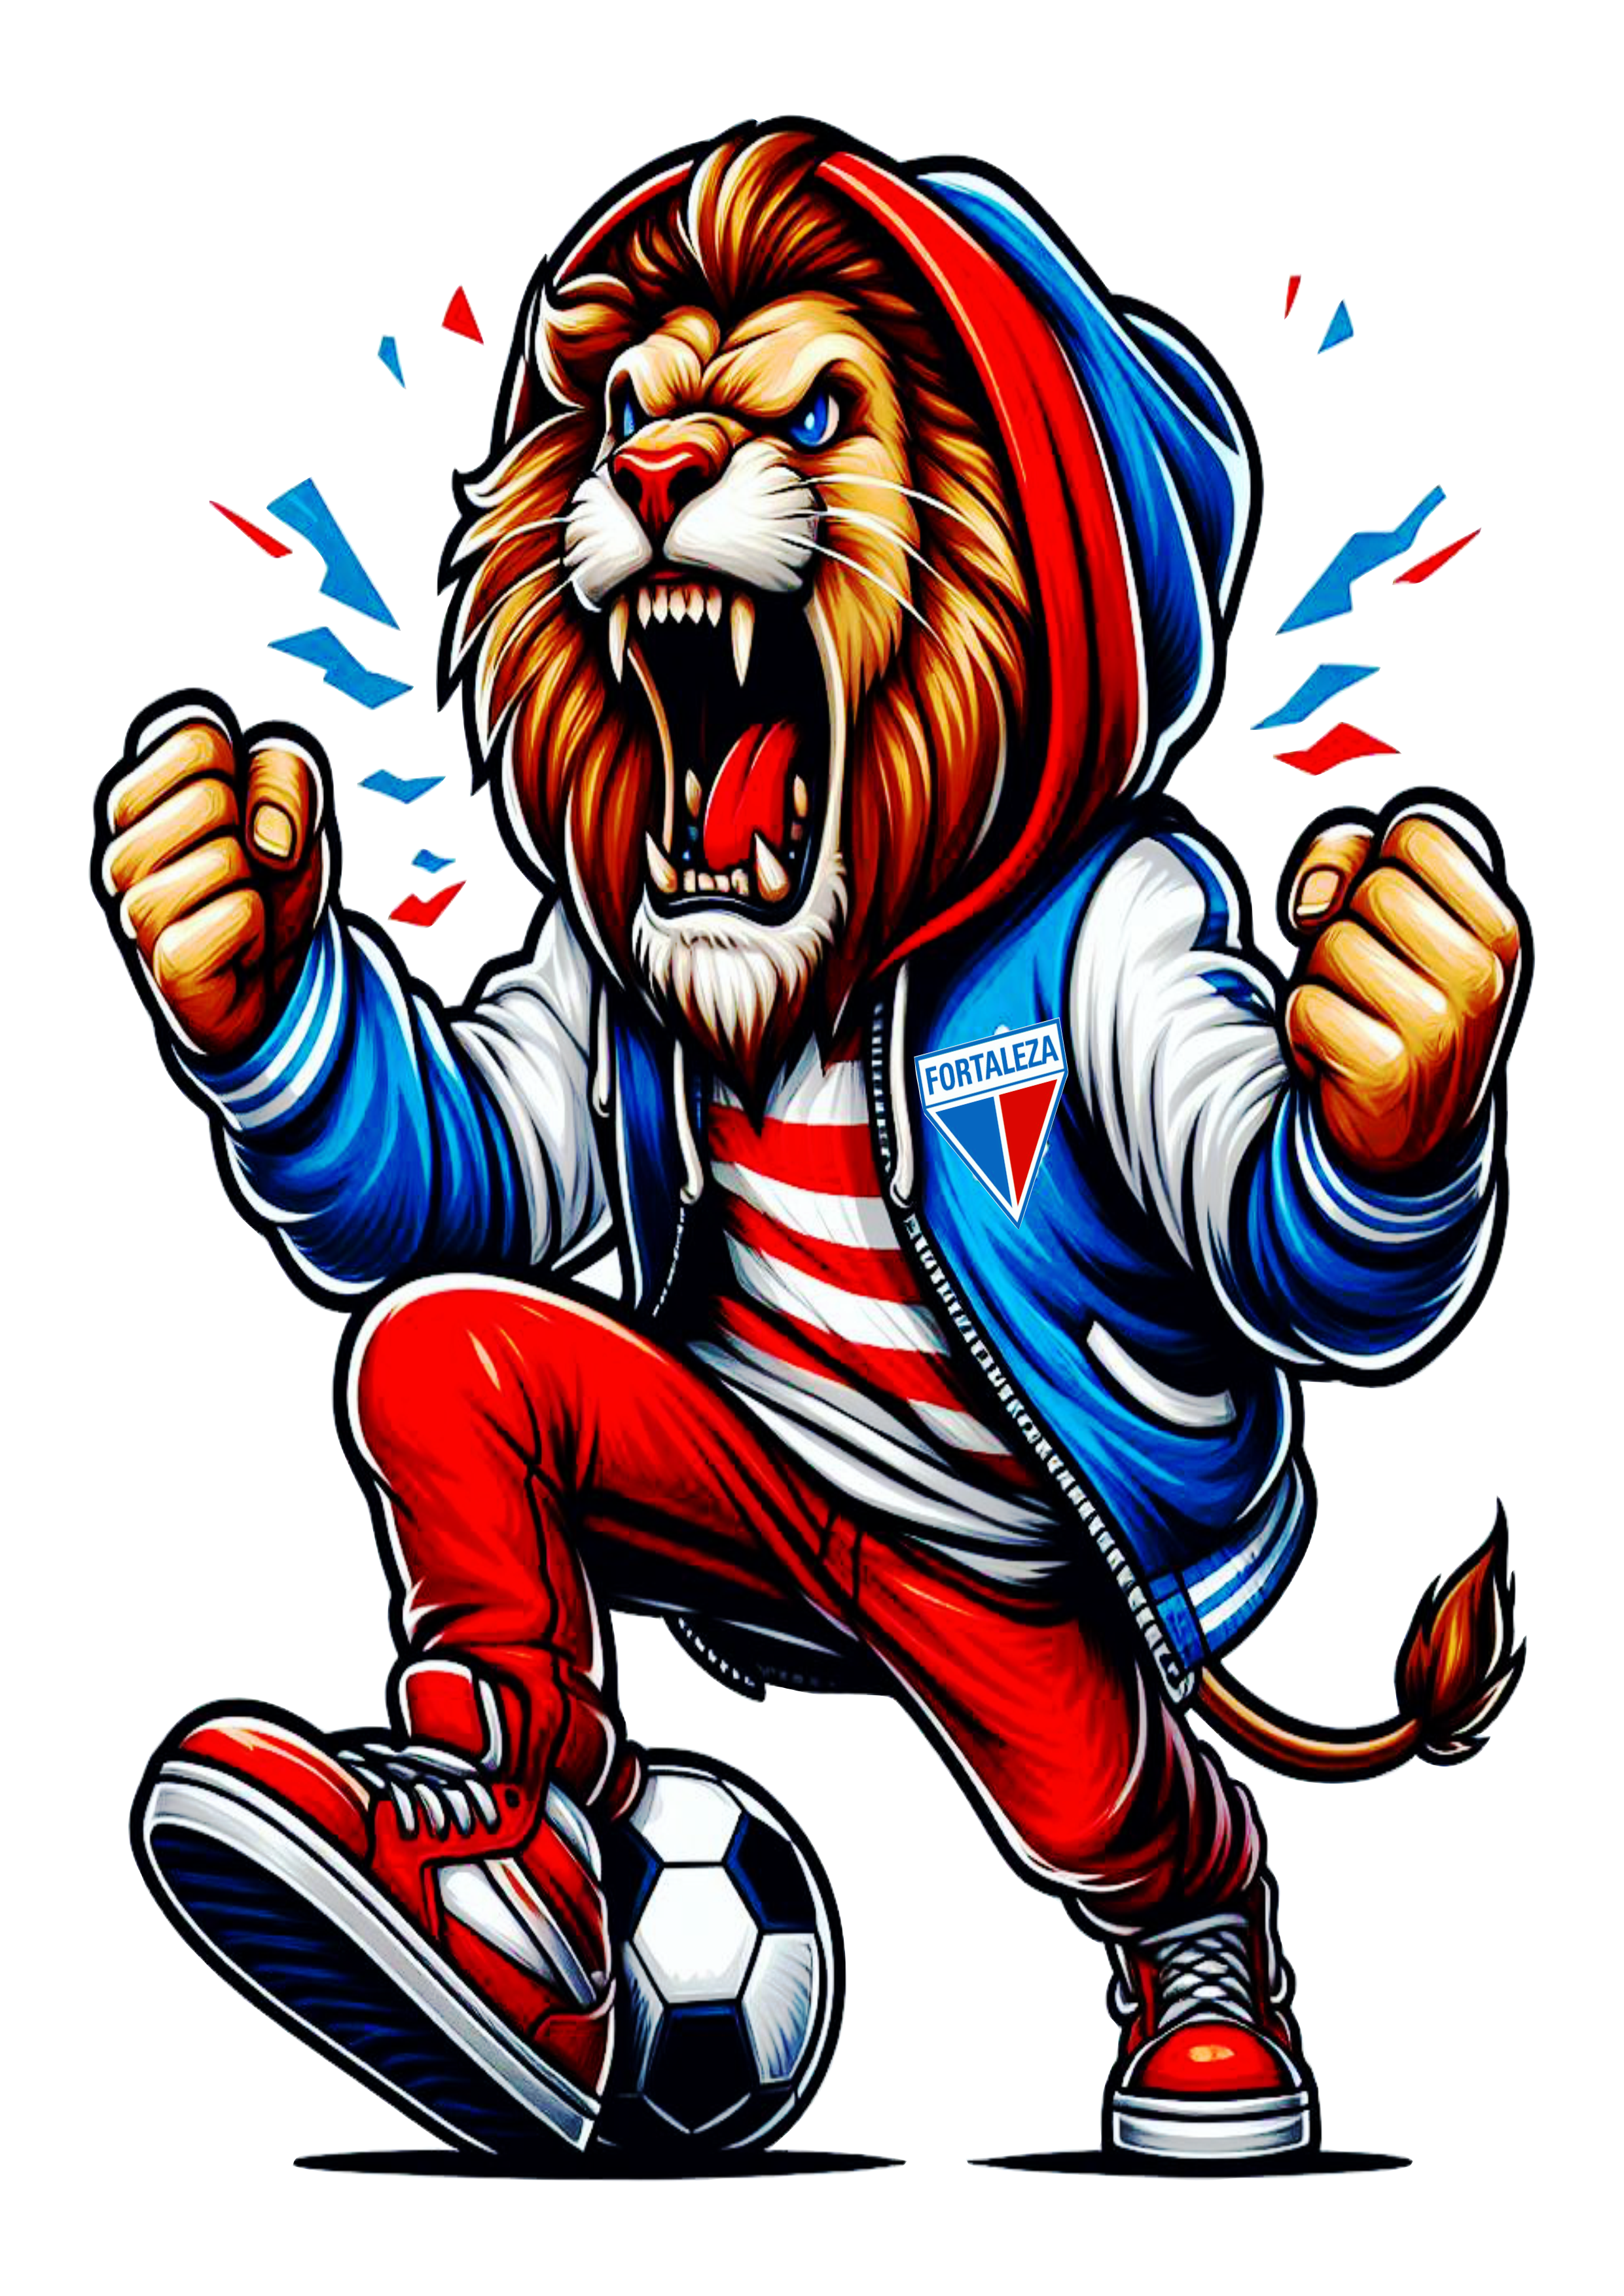 Fortaleza campeão leão mascote ilustração grátis para designer png